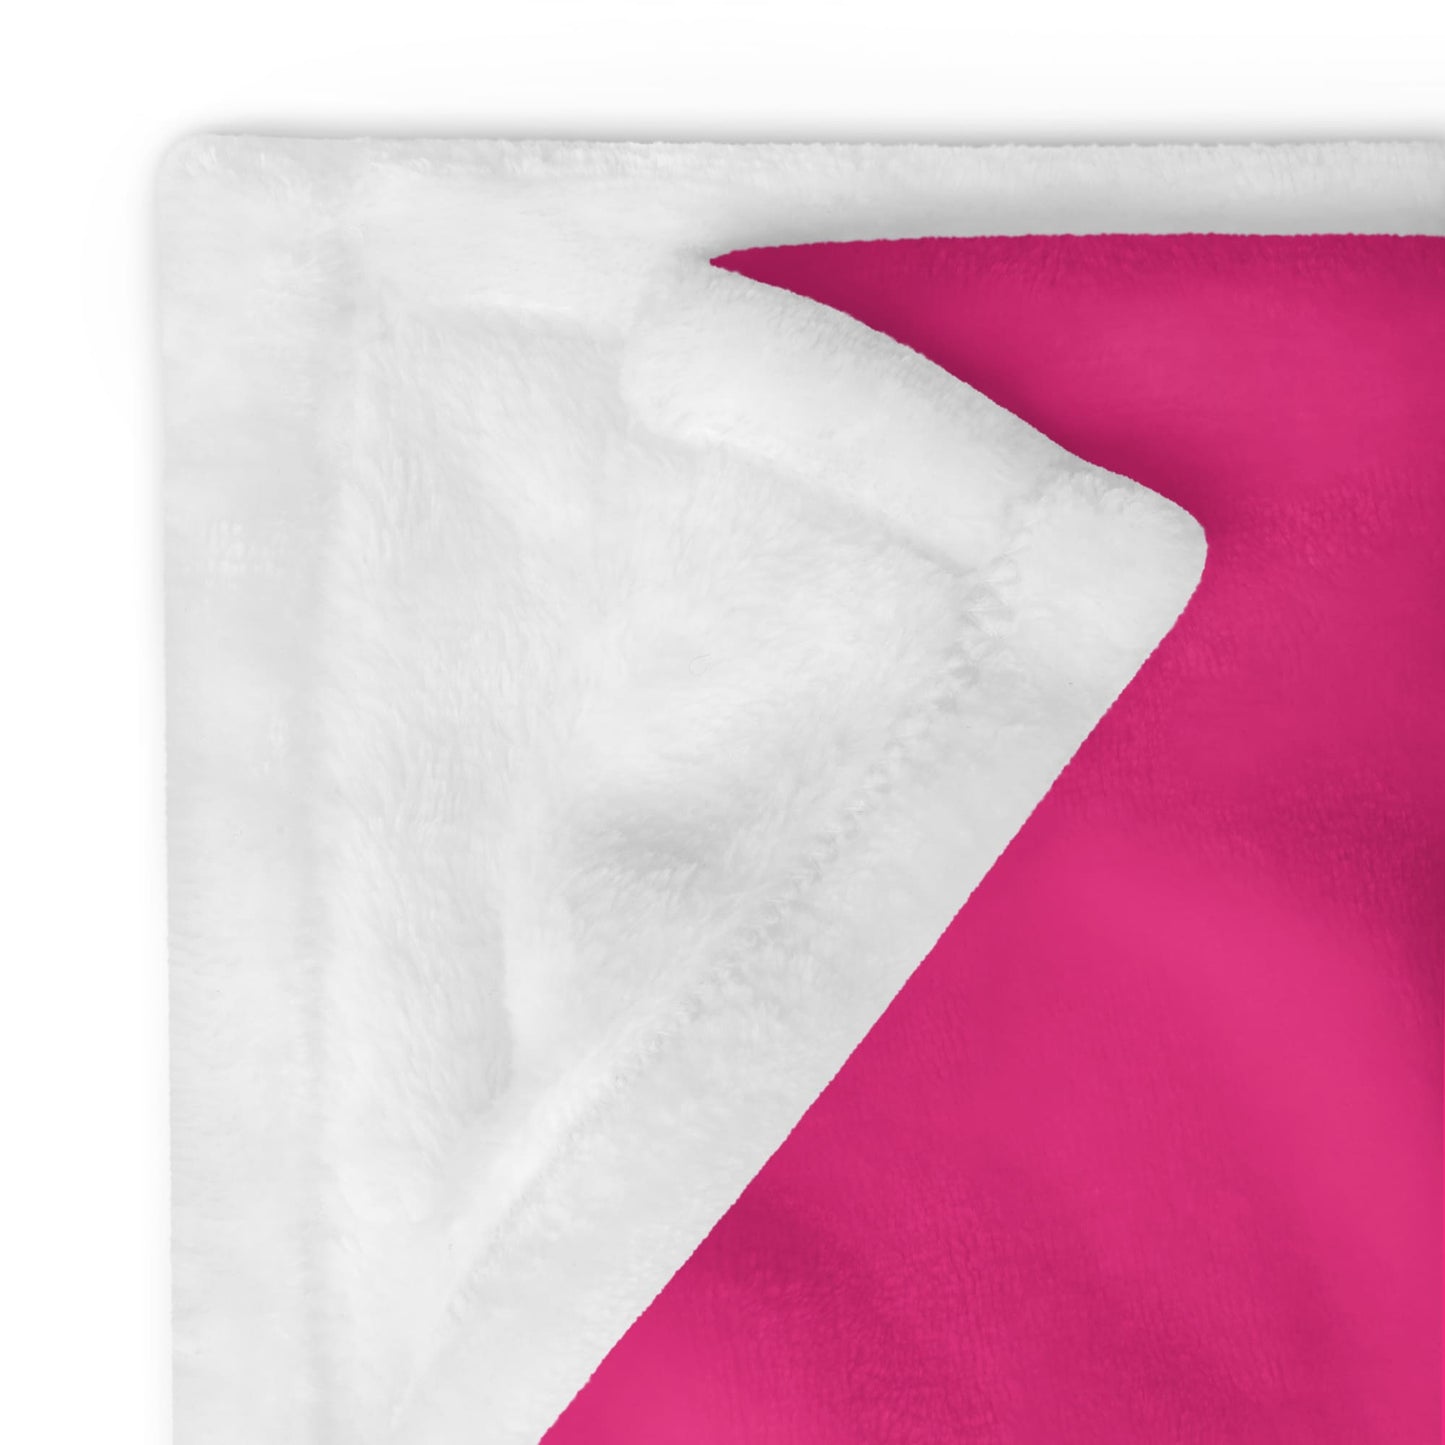 bisexual blanket detail